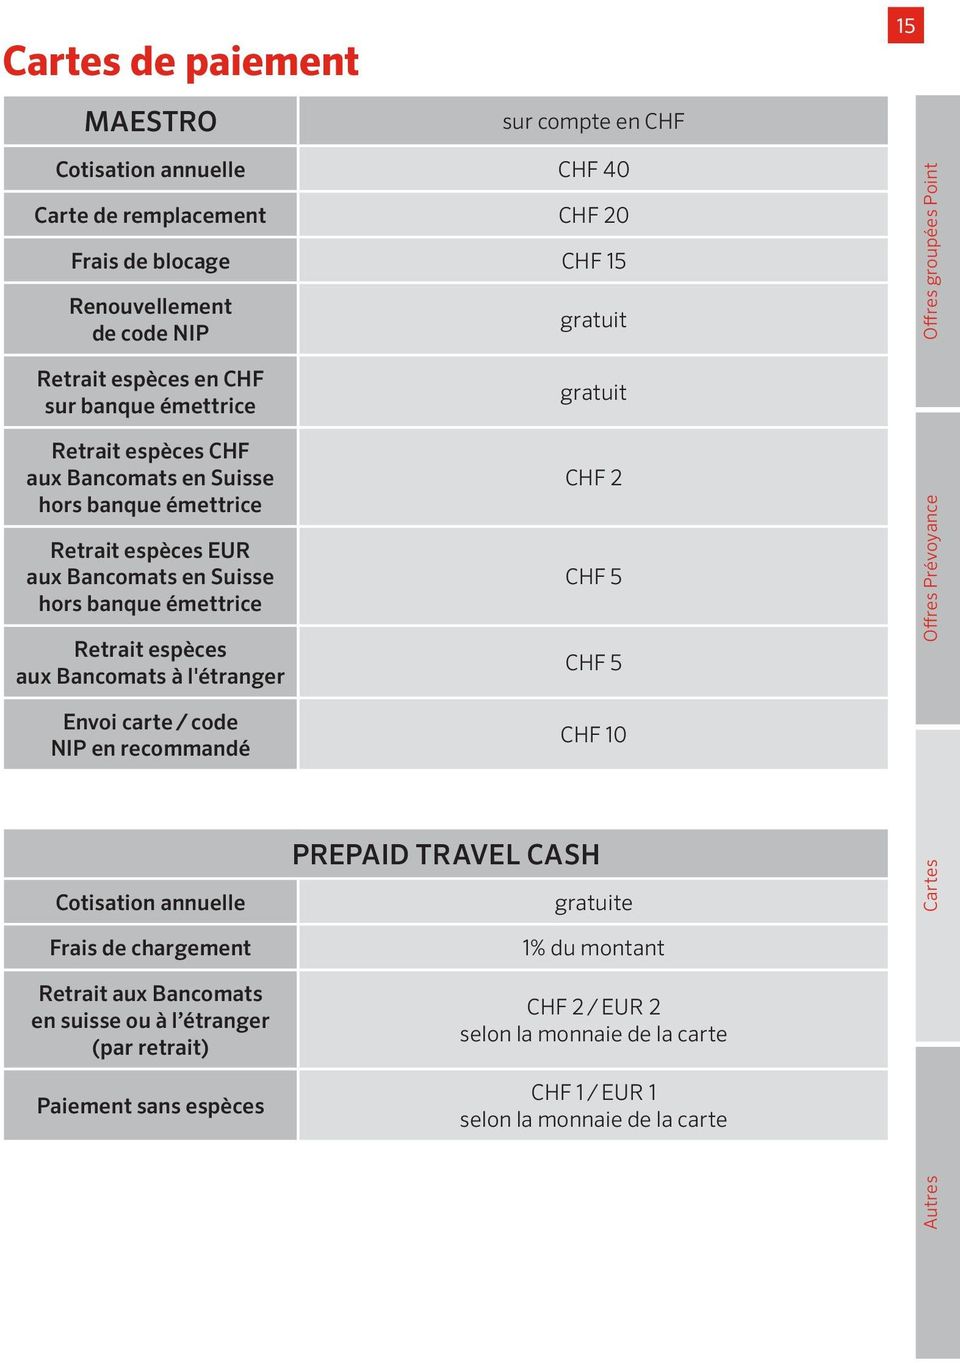 Envoi carte / code NIP en recommandé Cotisation annuelle Frais de chargement Retrait aux Bancomats en suisse ou à l étranger (par retrait) Paiement sans espèces gratuit gratuit CHF 2 CHF 5